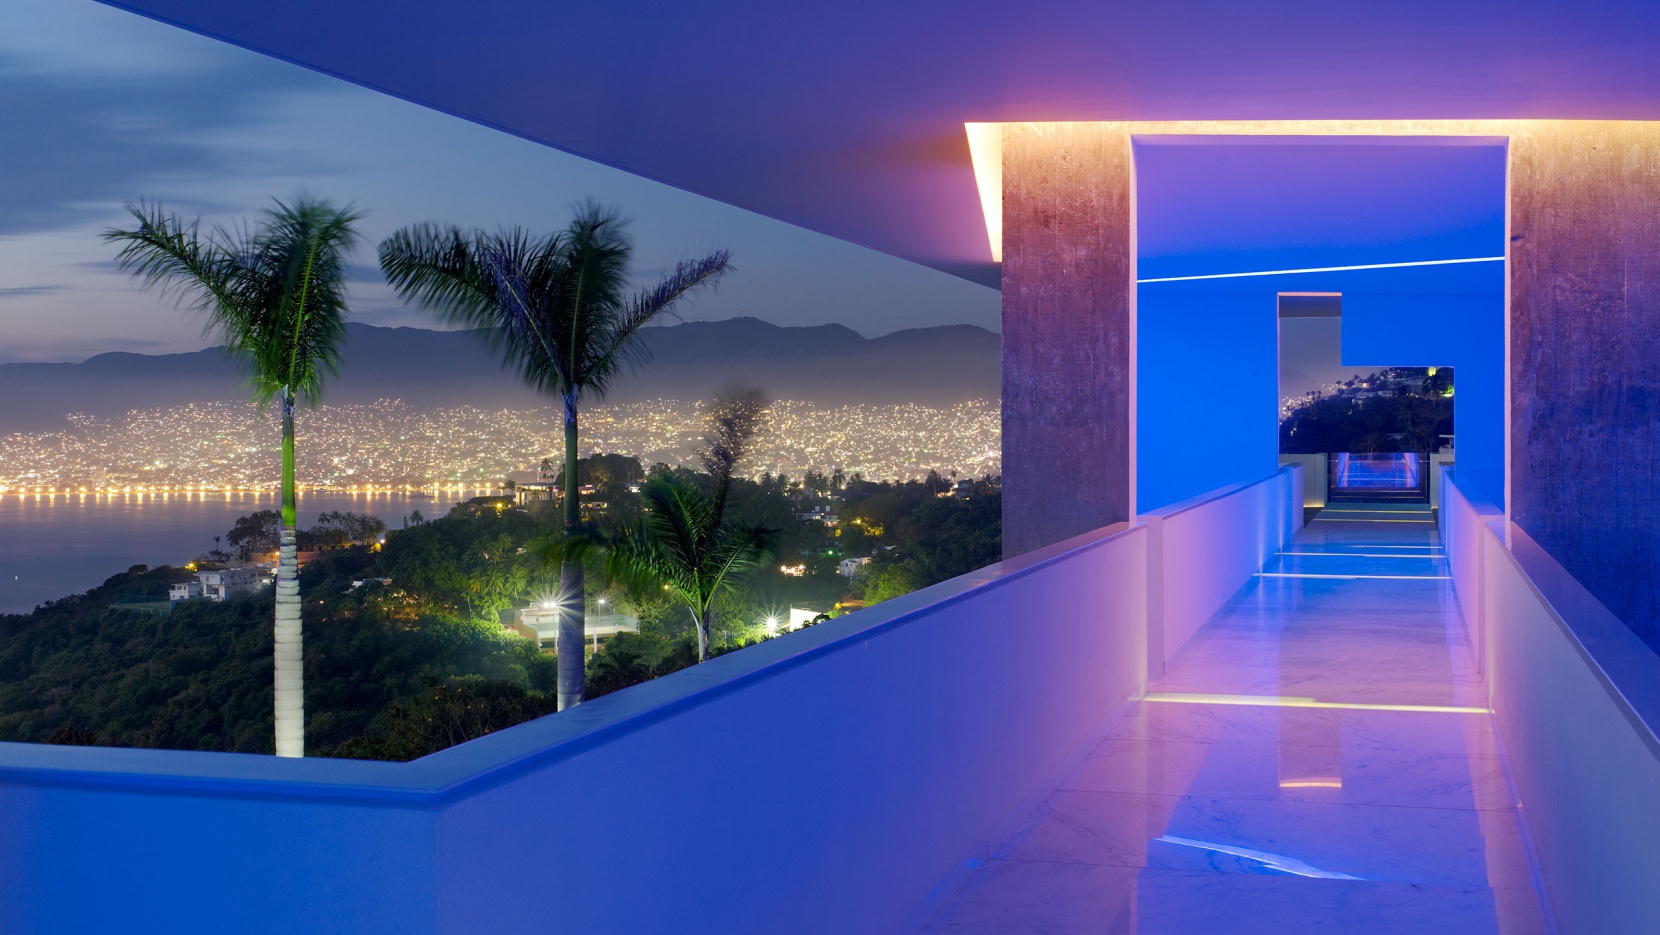 p1_the_encanto_hotel_by_miguel_angel_aragones_acapulco_mexico_yatzer